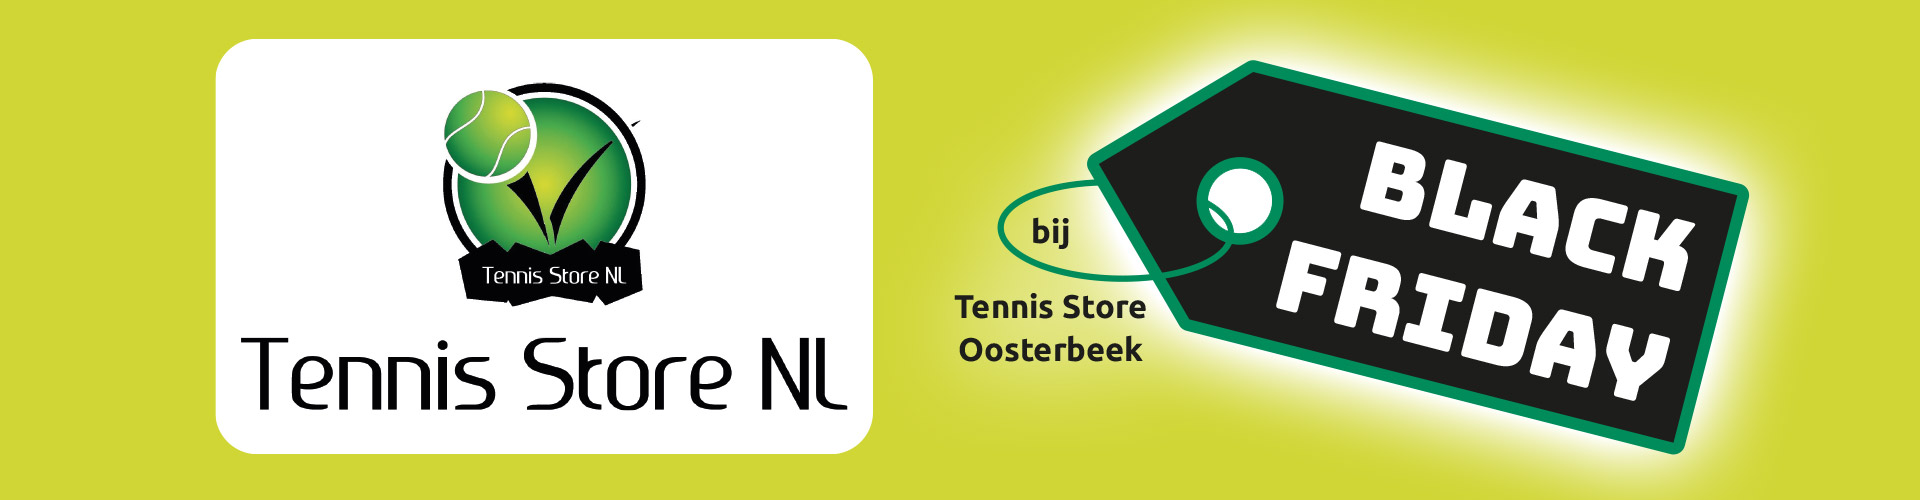 Tennis Store NL Oosterbeek BLACK FRIDAY